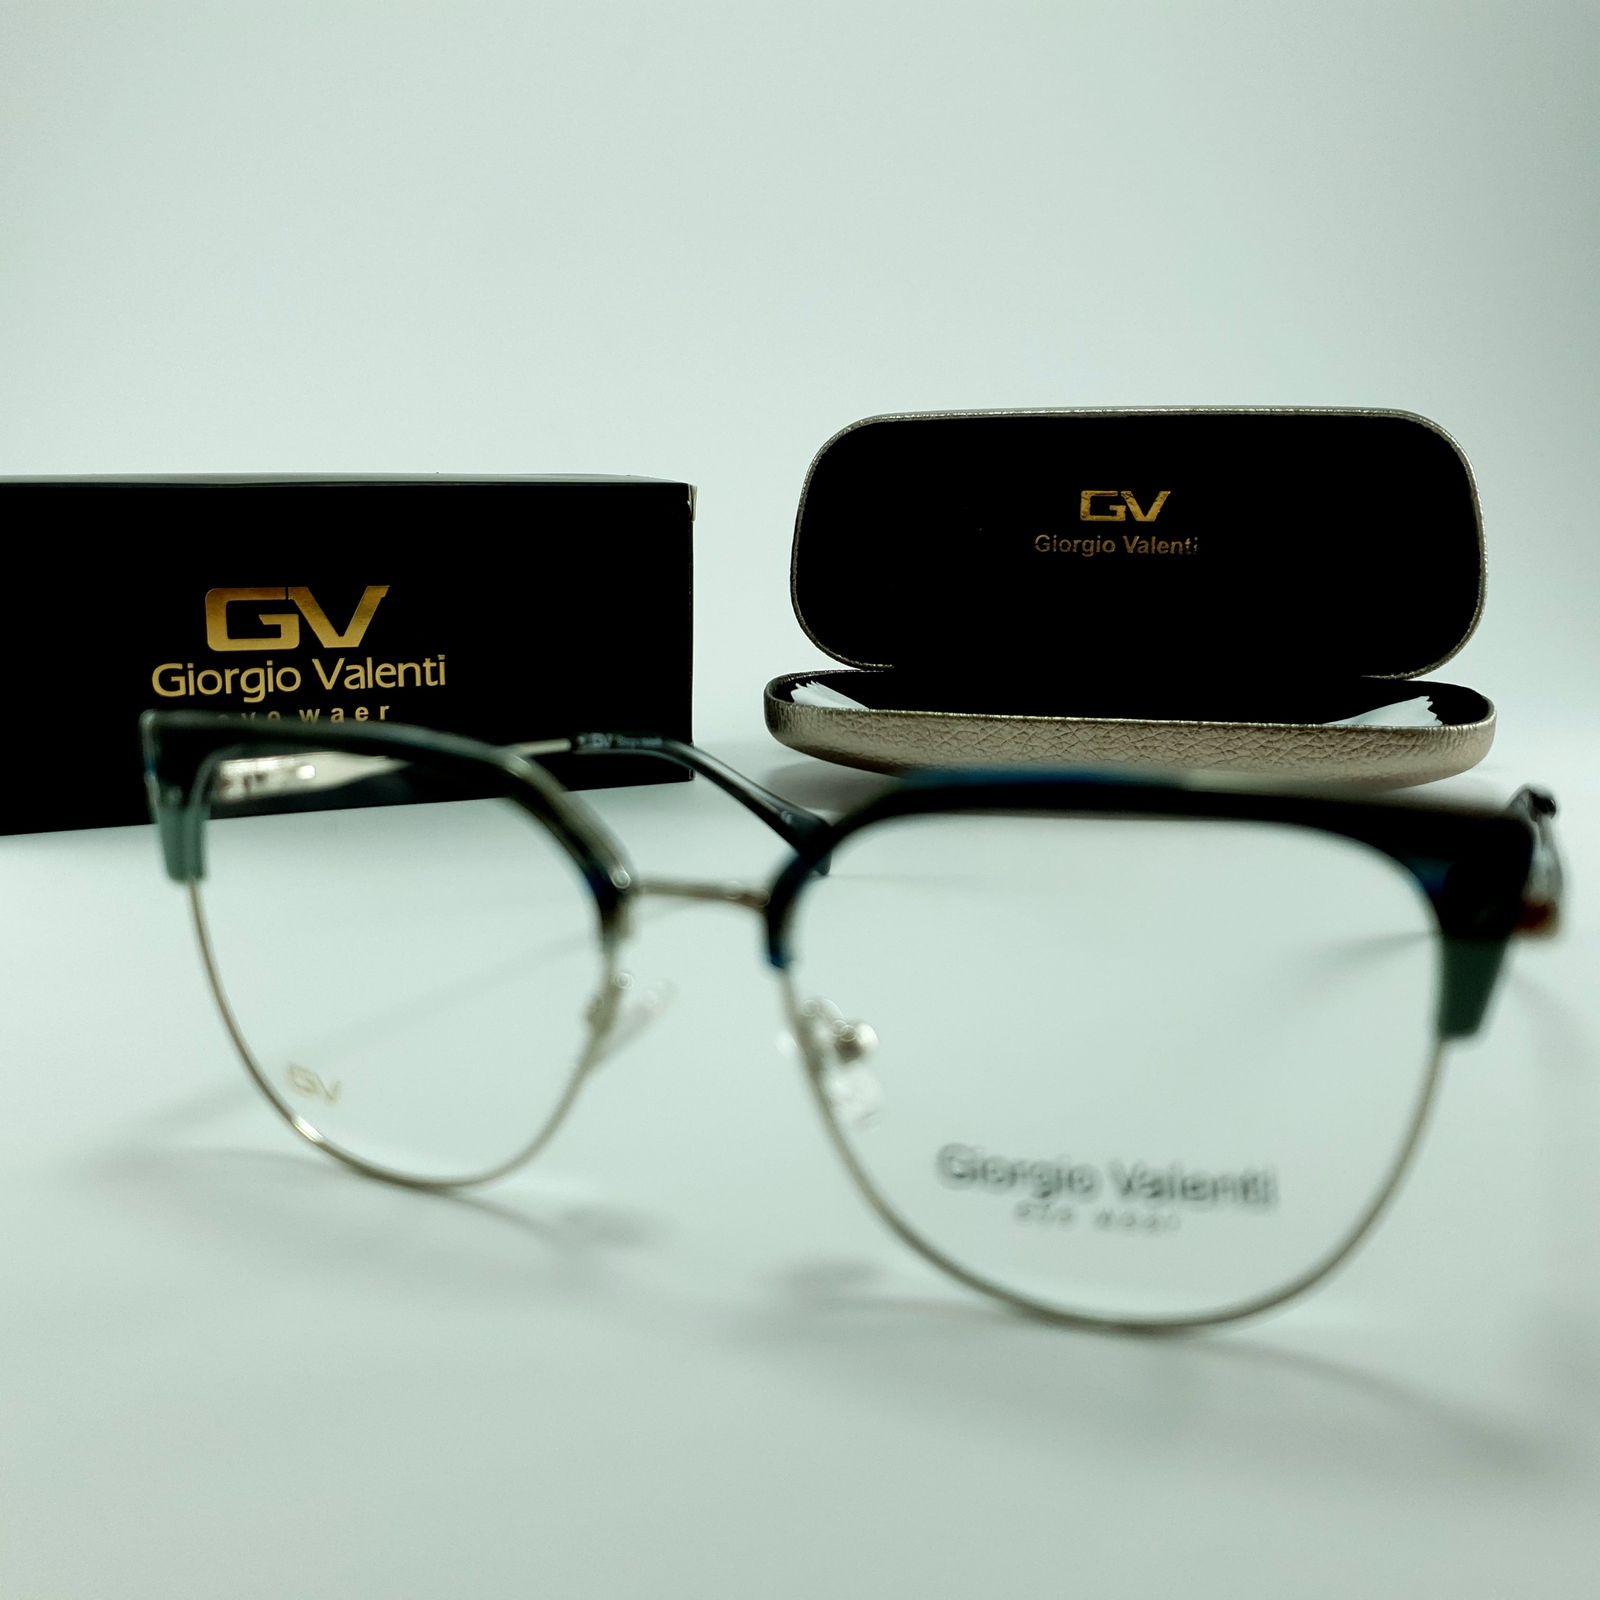 فریم عینک طبی زنانه جورجیو ولنتی مدل GV-4727 -  - 6